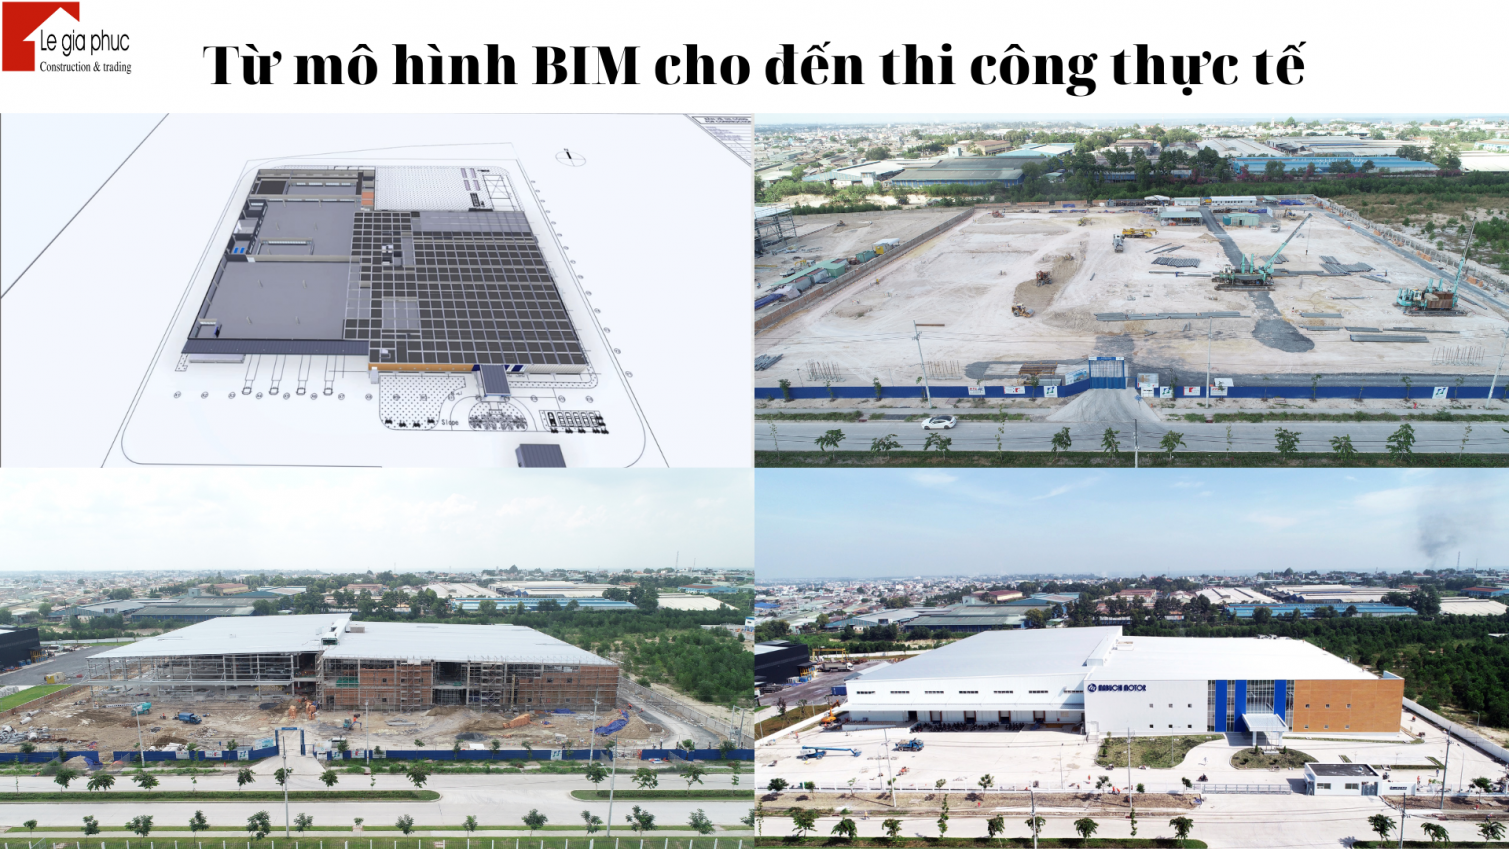 Các bản vẽ thực hiện theo mô hình BIM để thực hiện công tác xây dựng nhà xưởng, nhà công nghiệp